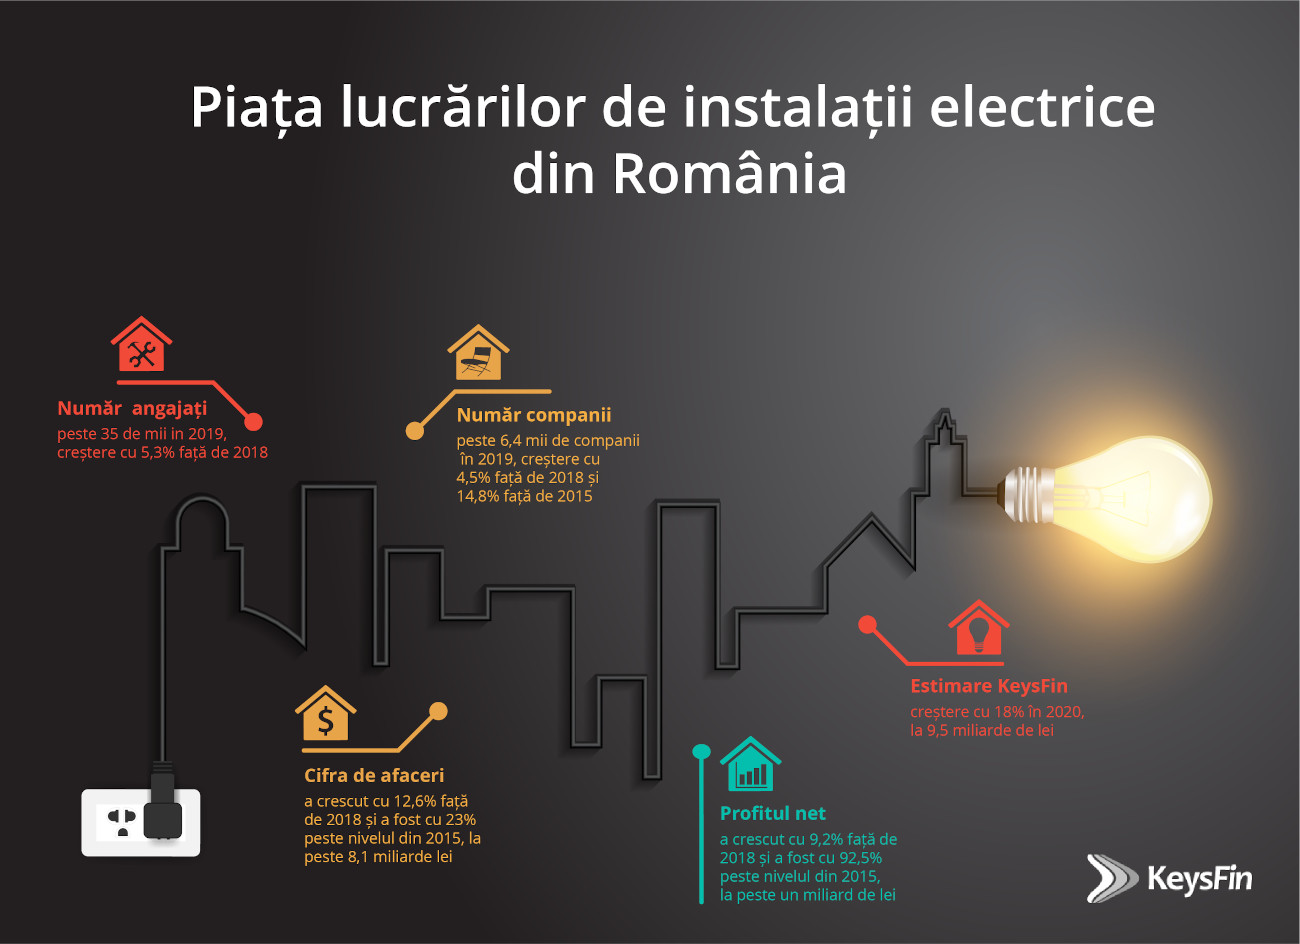 Luminițele de Crăciun au contribuit la avântul pieței locale de instalații electrice în 2019